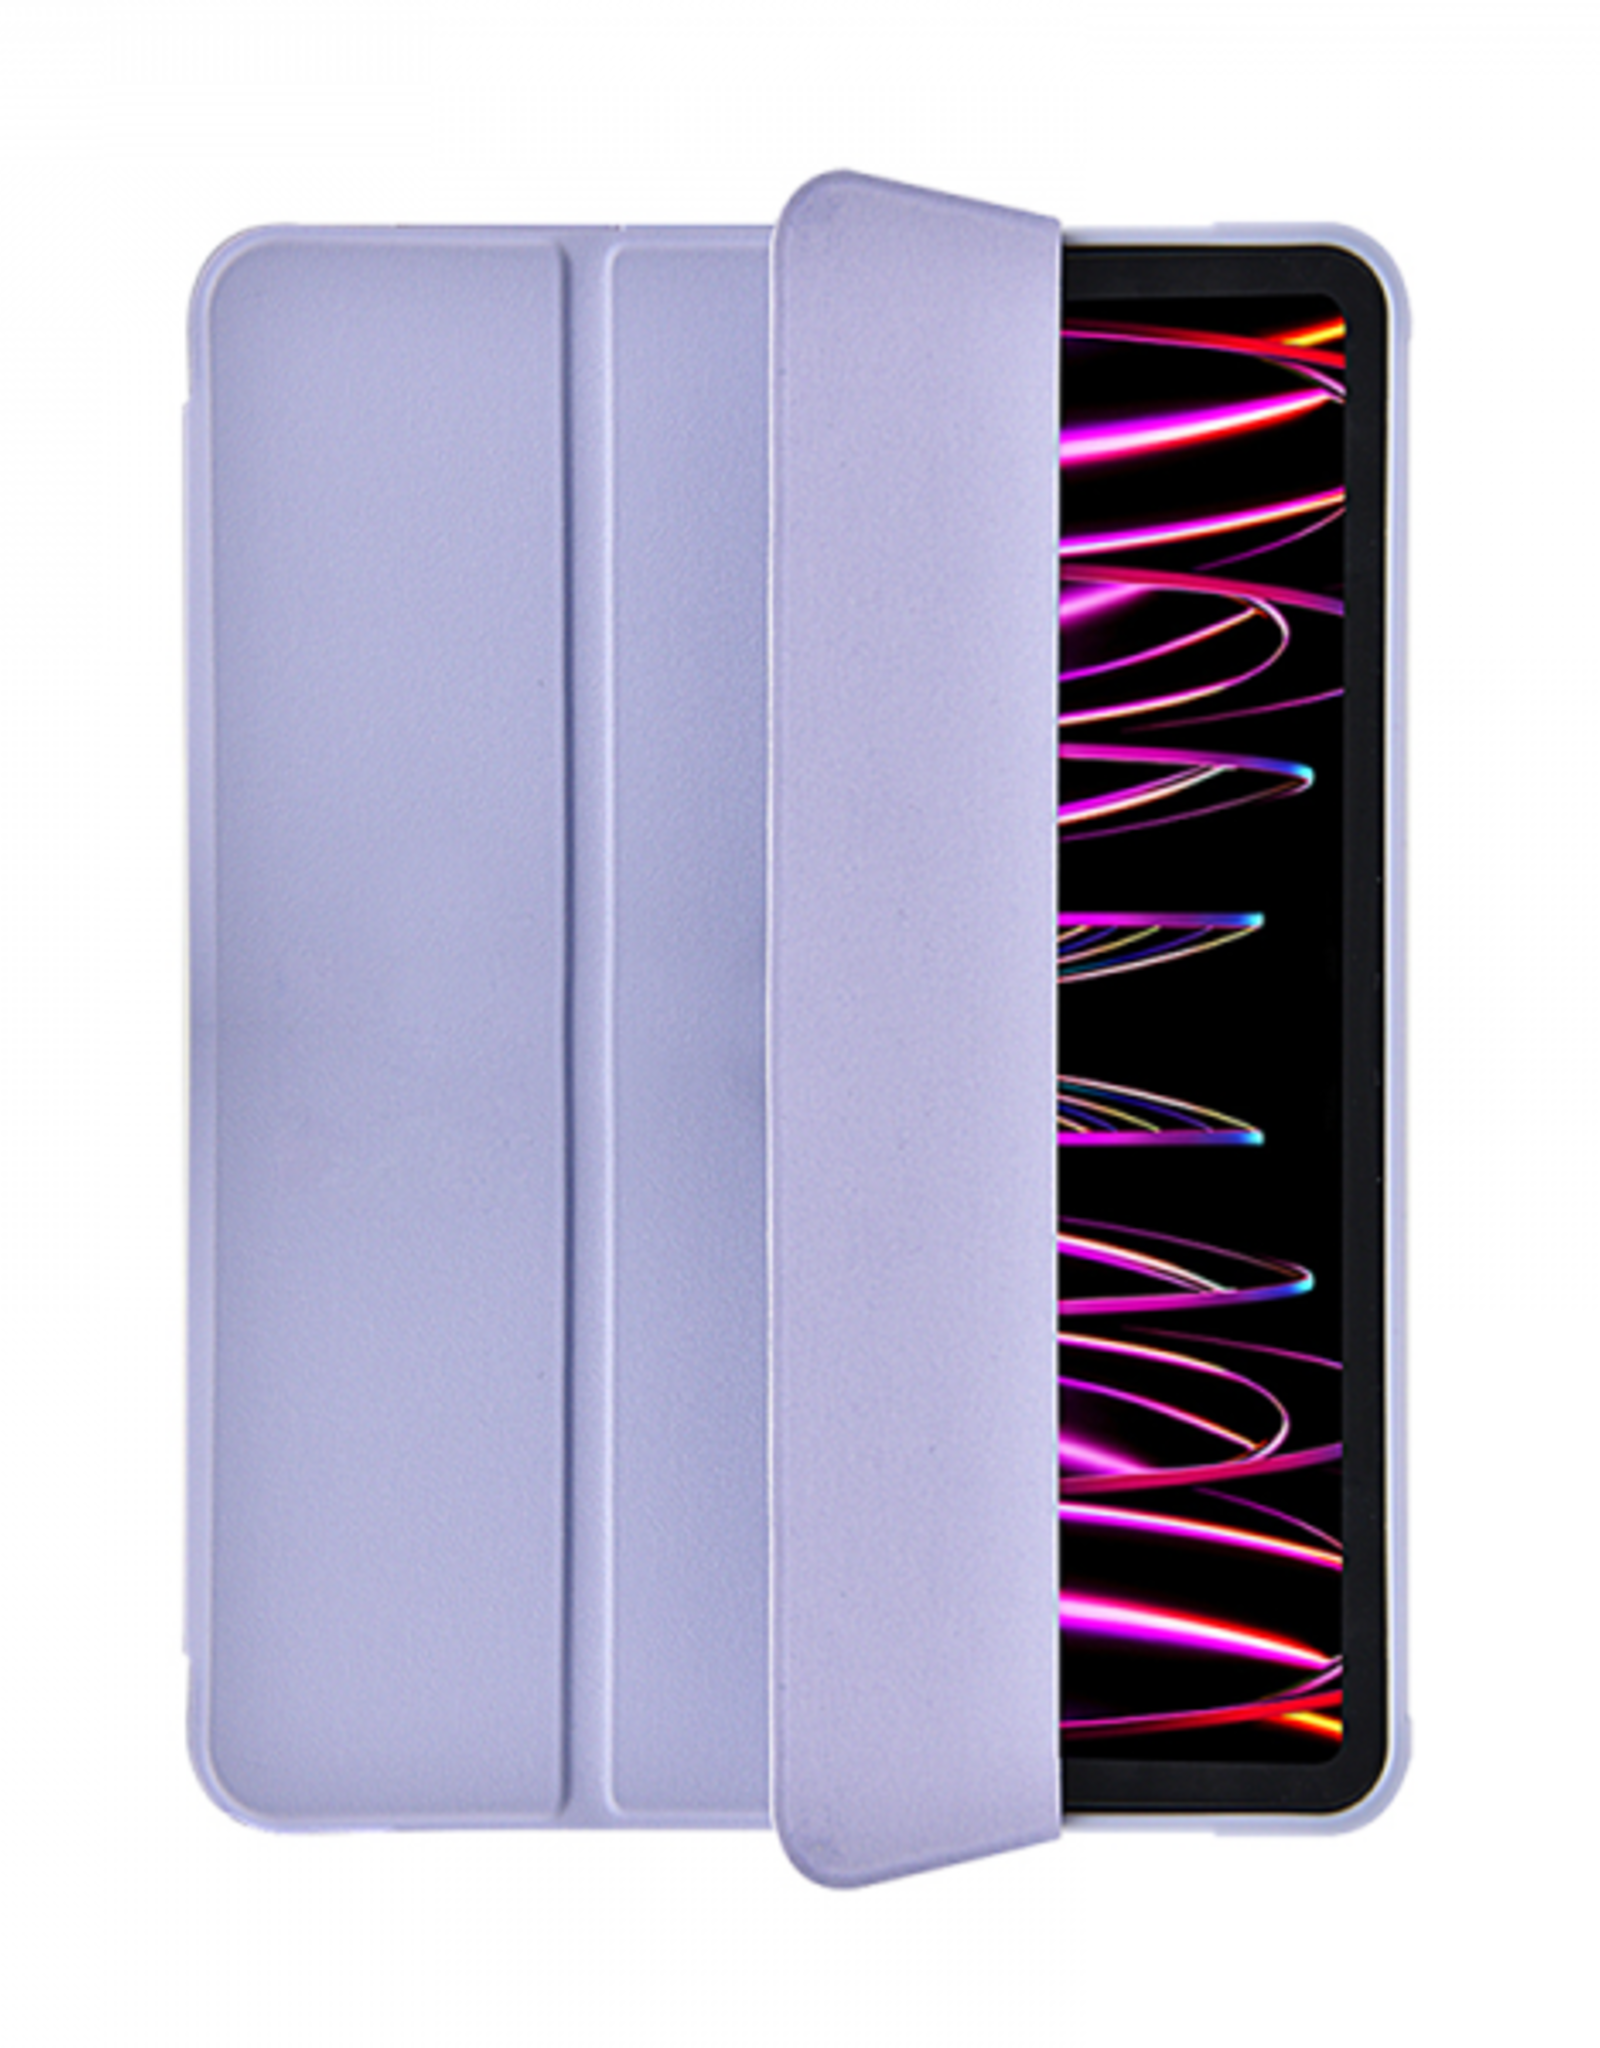 WIWU iPad 10.2/10.5 Classic II Case Purple